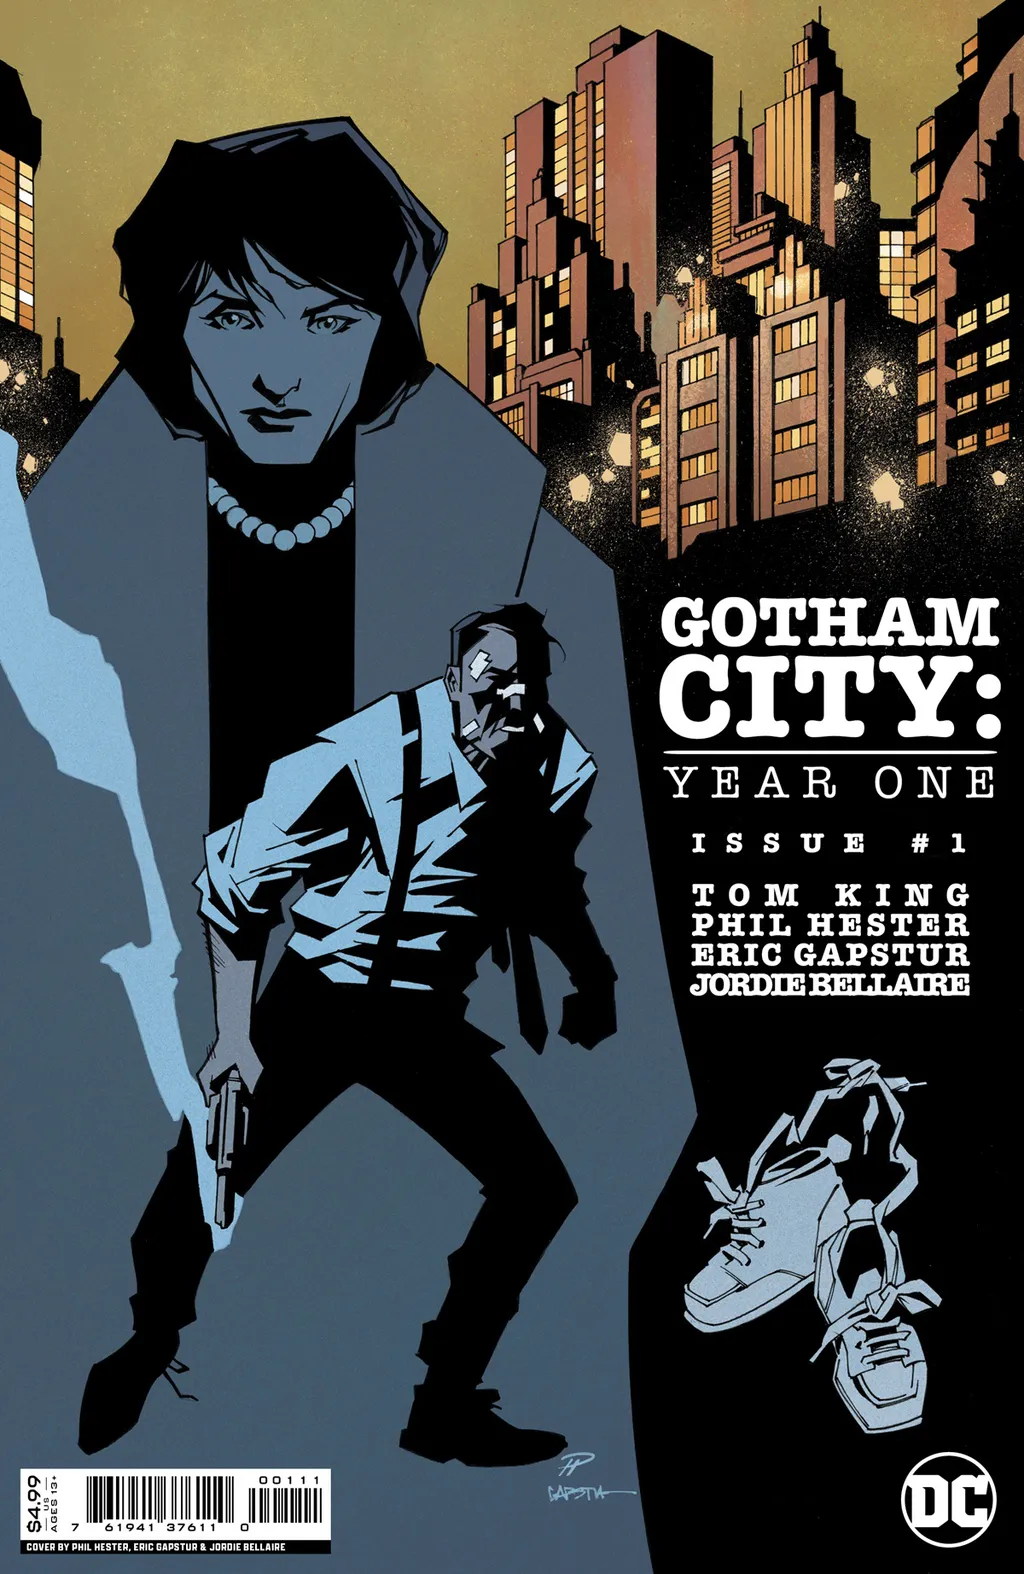  Gotham City: Year One #1 mostra uma história diferente para a origem do nome Batman na cidade (Imagem: Reprodução/DC Comics)